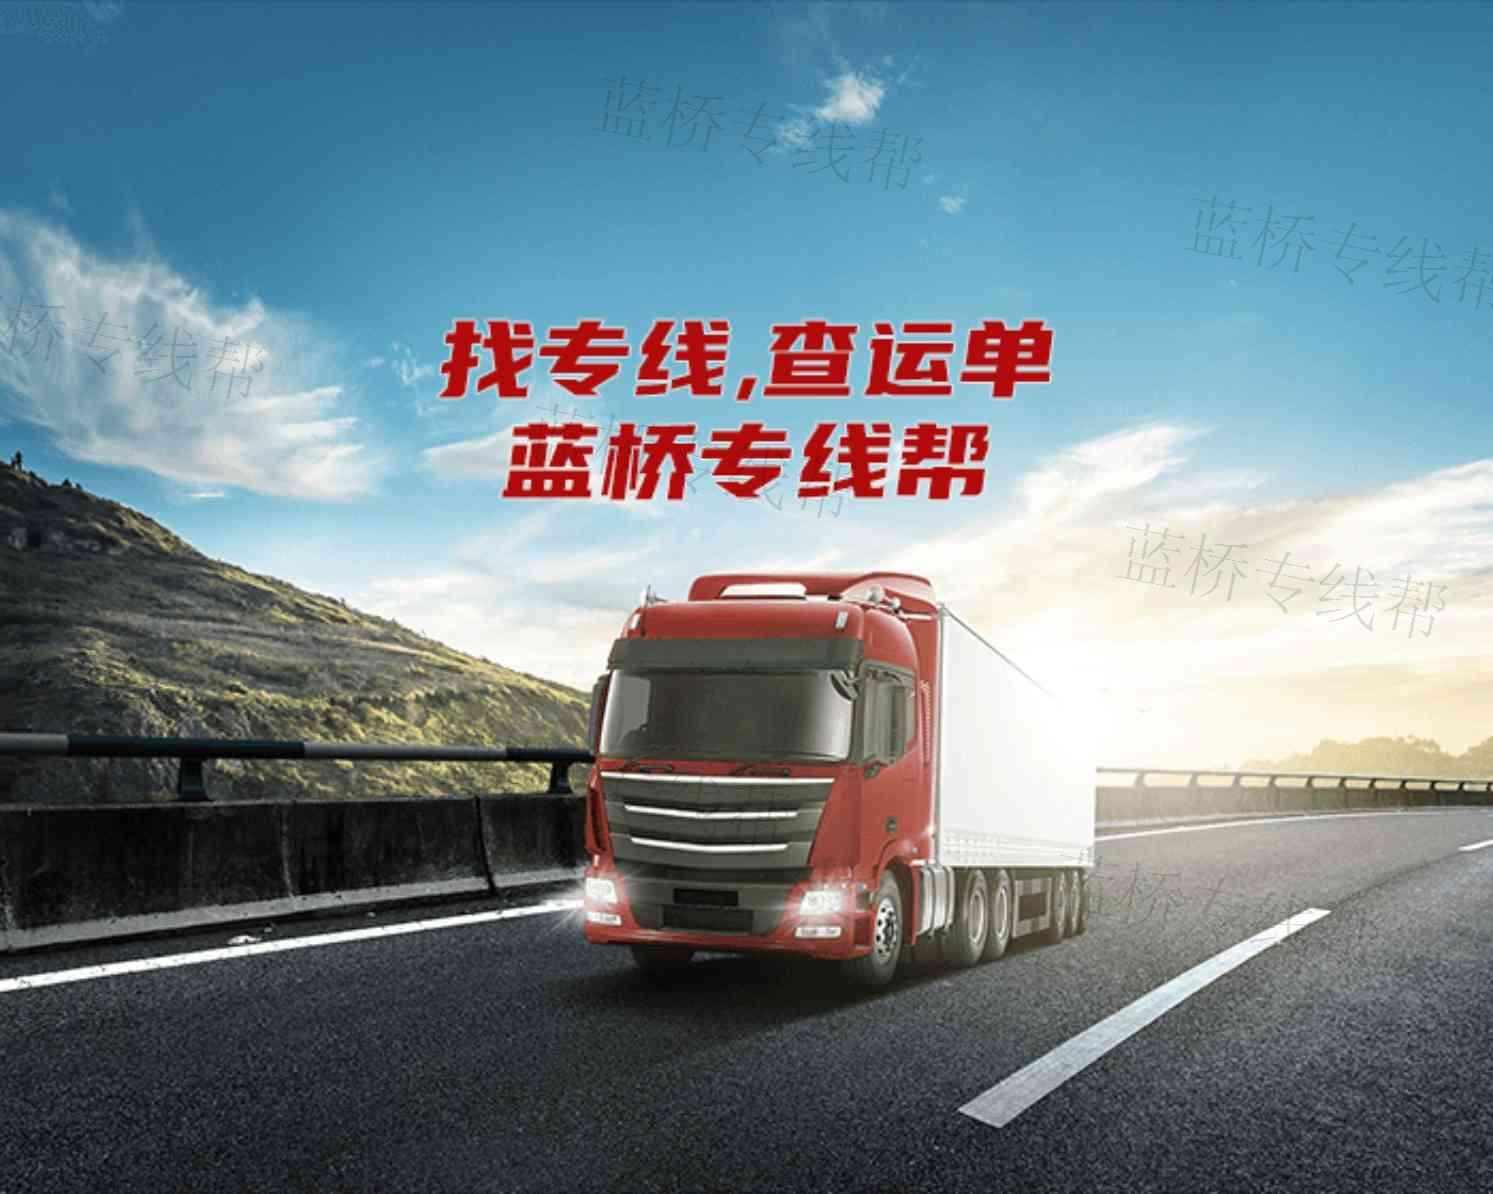 武汉联创捷运物流有限公司西安分公司